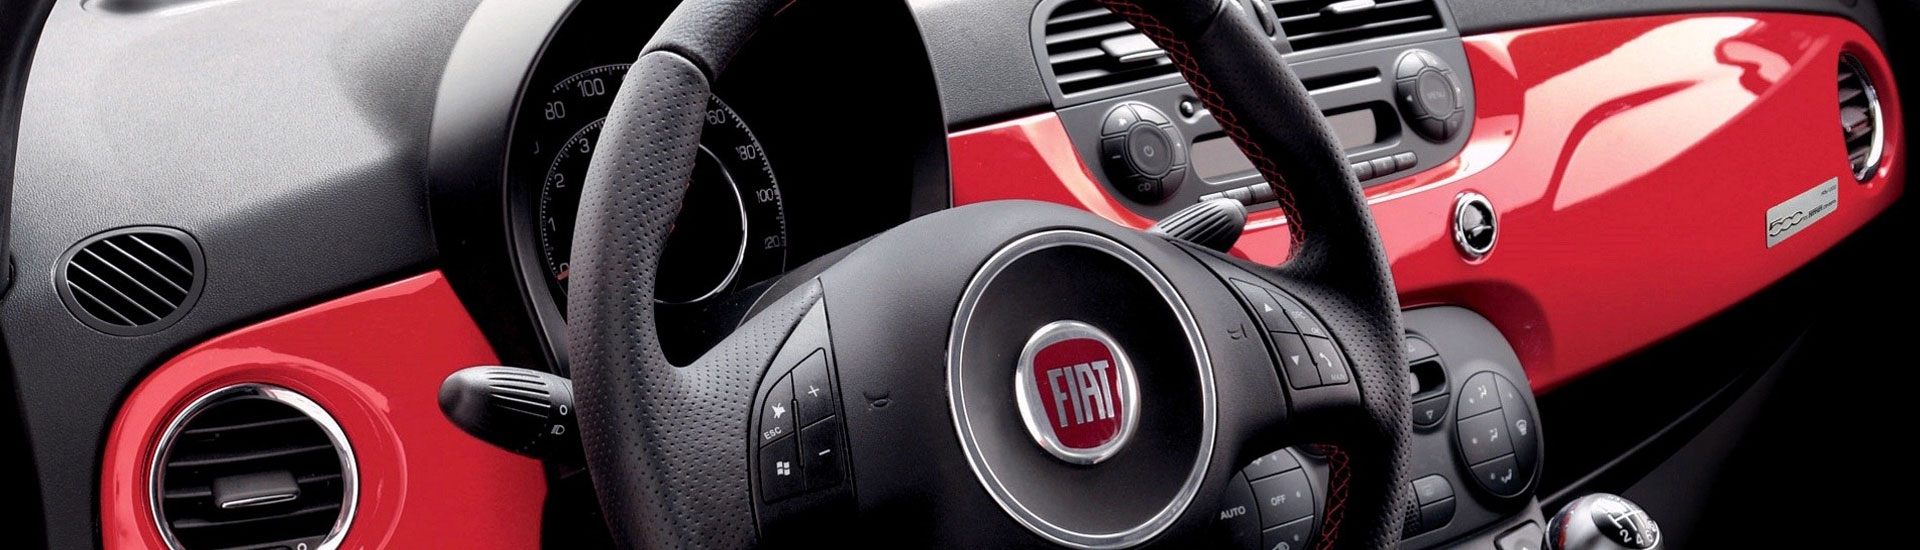 2014 Fiat 500L Custom Dash Kits